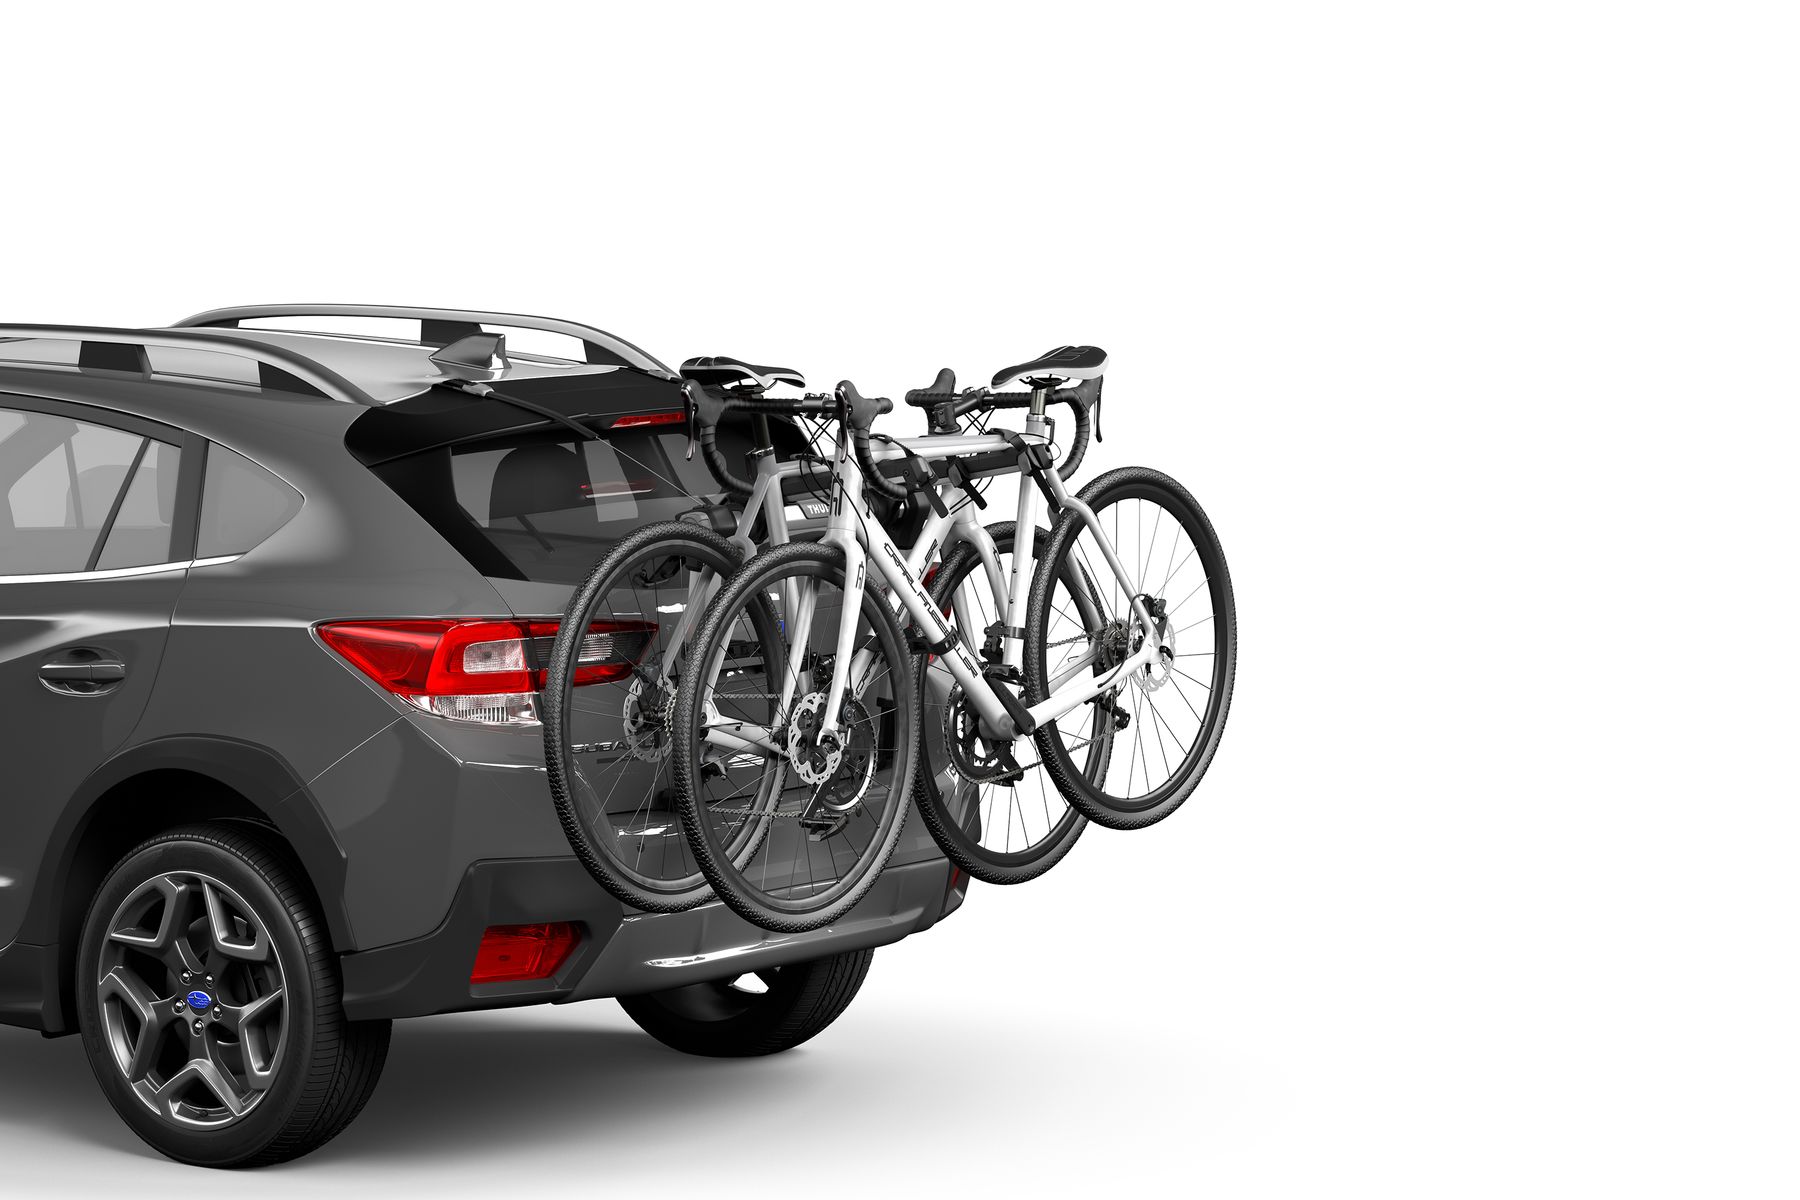 Trunk hitch Bike Mount Rack Hatchback 3 Bicycle Bike Carrier Holder for SUV Car 